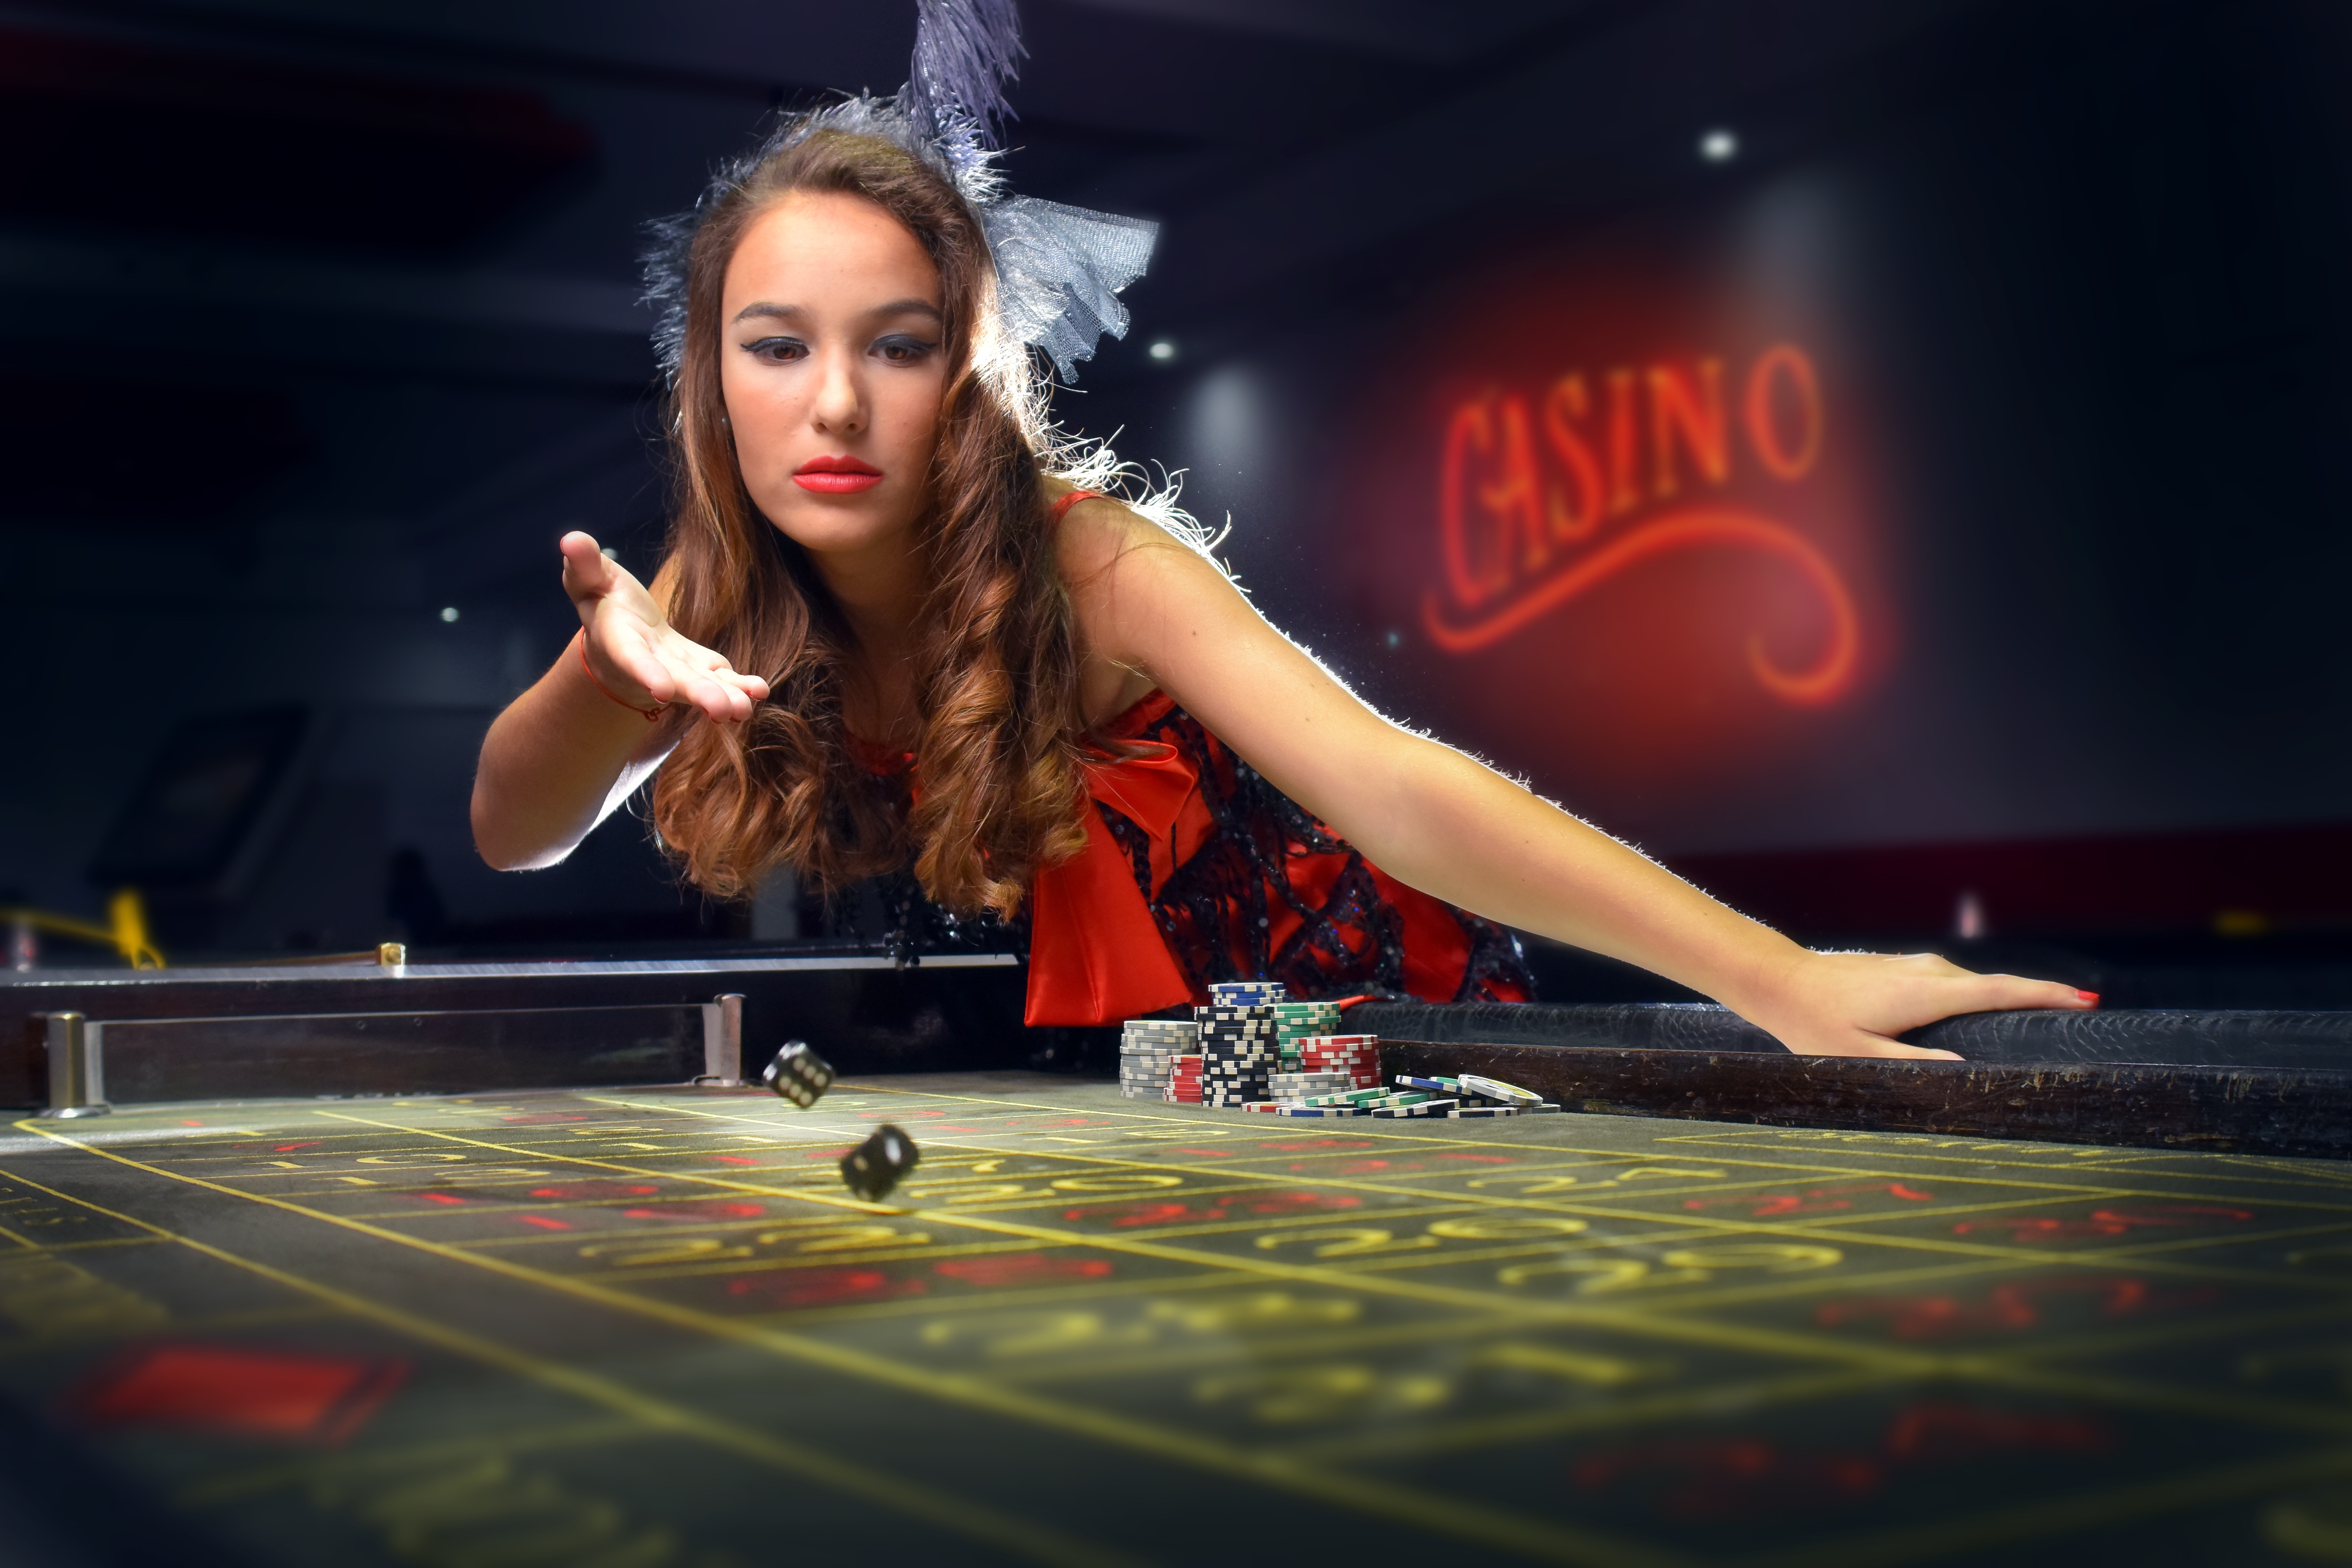 Https drgn4u casino. Красивая девушка казино. Казино фото. Фотосессия в казино. Фотосессия на покерном столе.